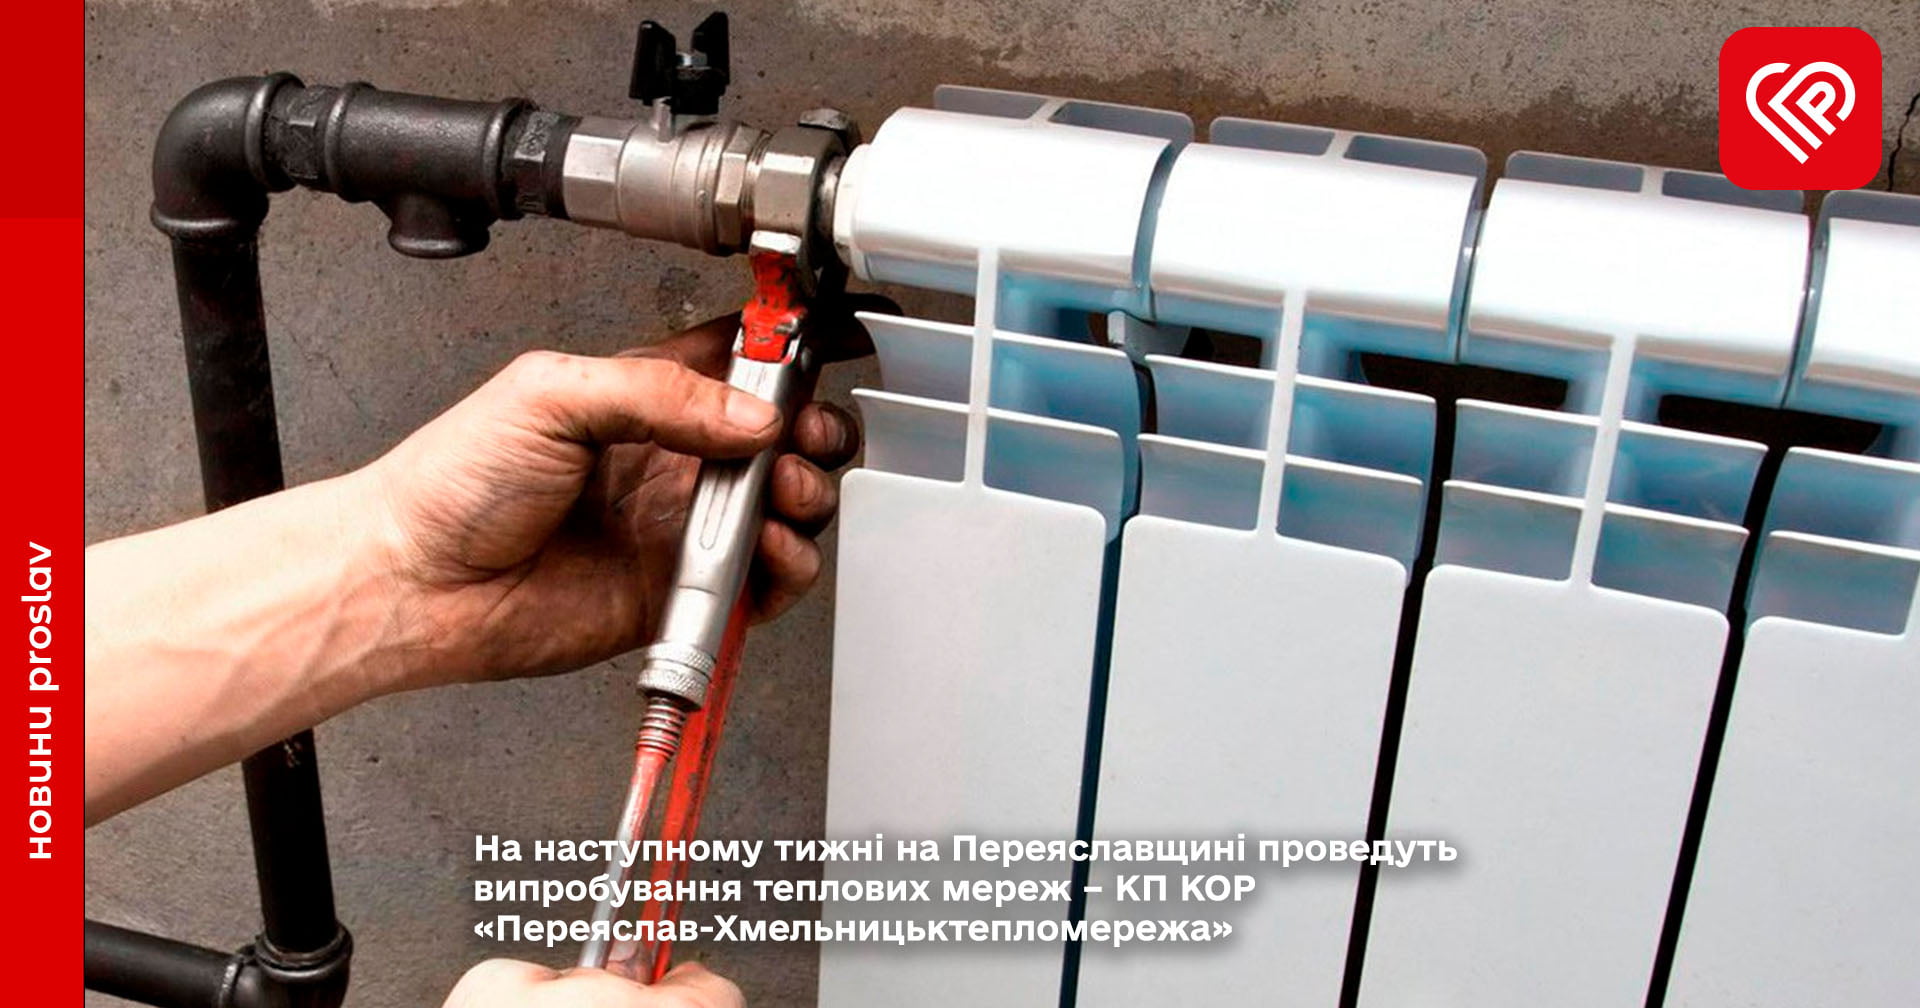 На наступному тижні на Переяславщині проведуть випробування теплових мереж – КП КОР «Переяслав-Хмельницьктепломережа»